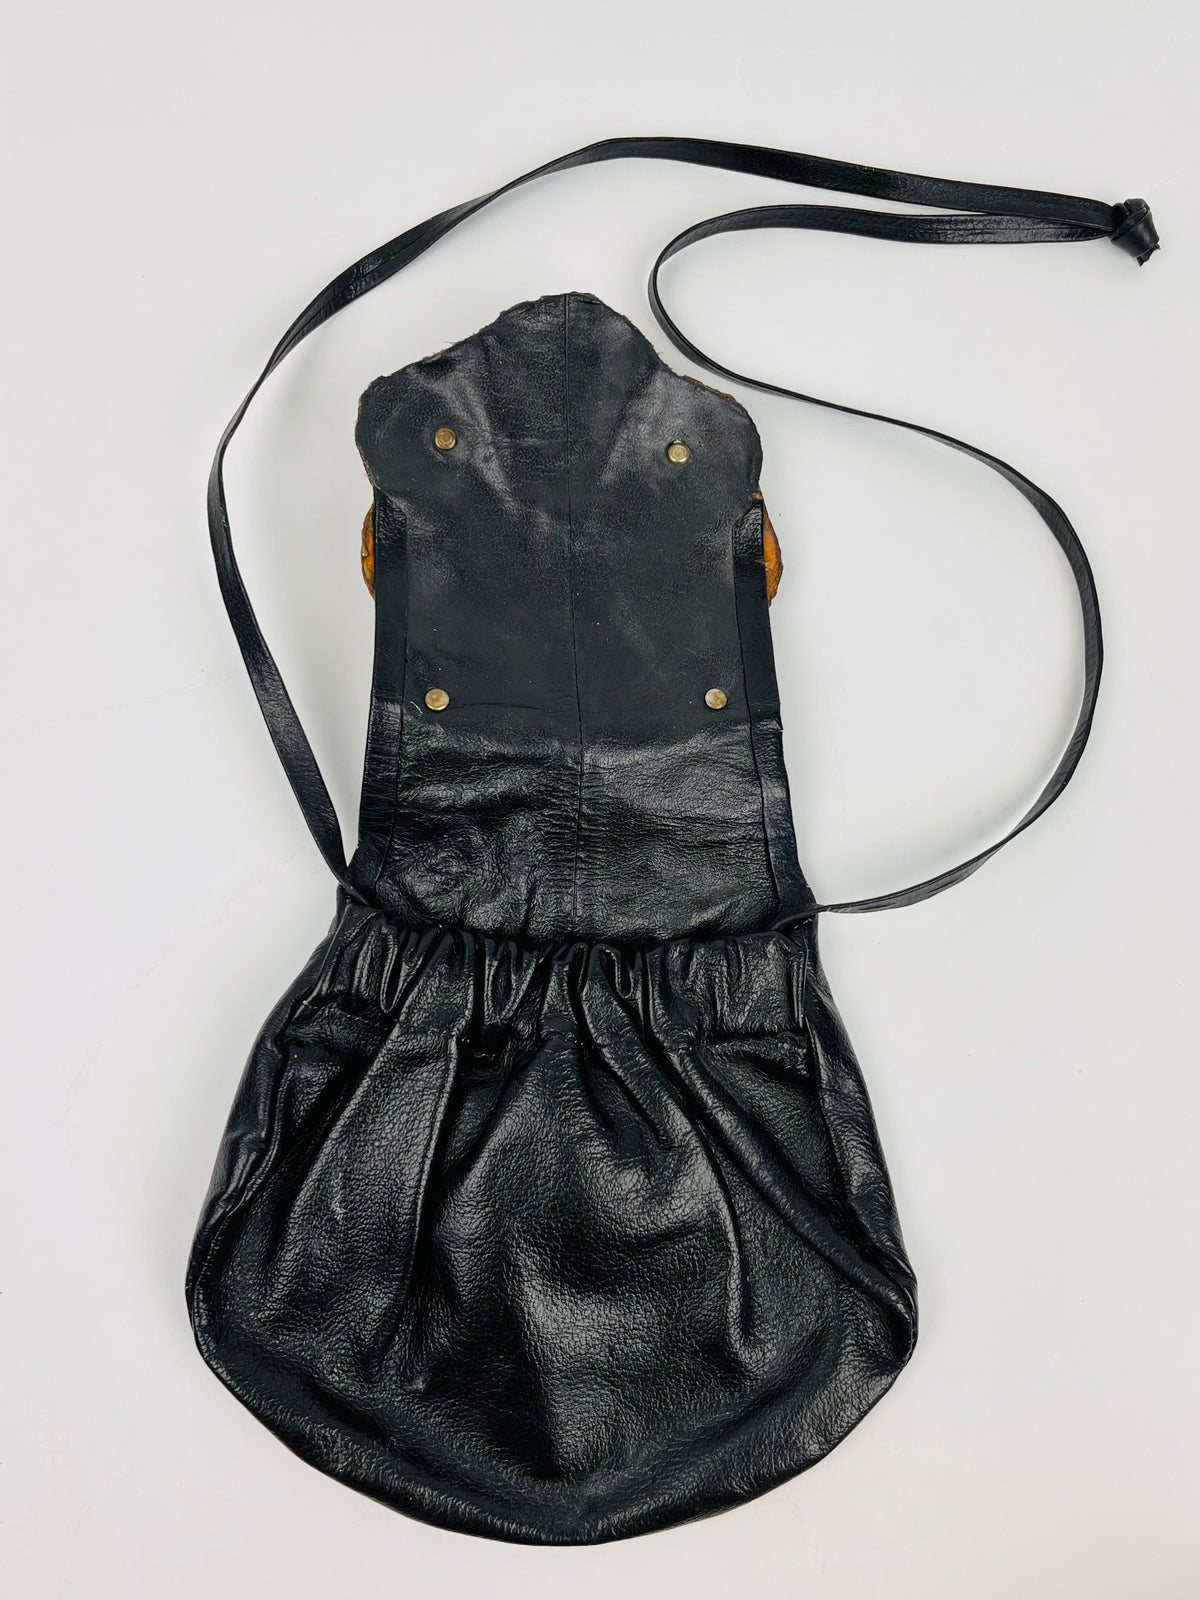 Vintage Brutalist Bag by Copa Collection - Black